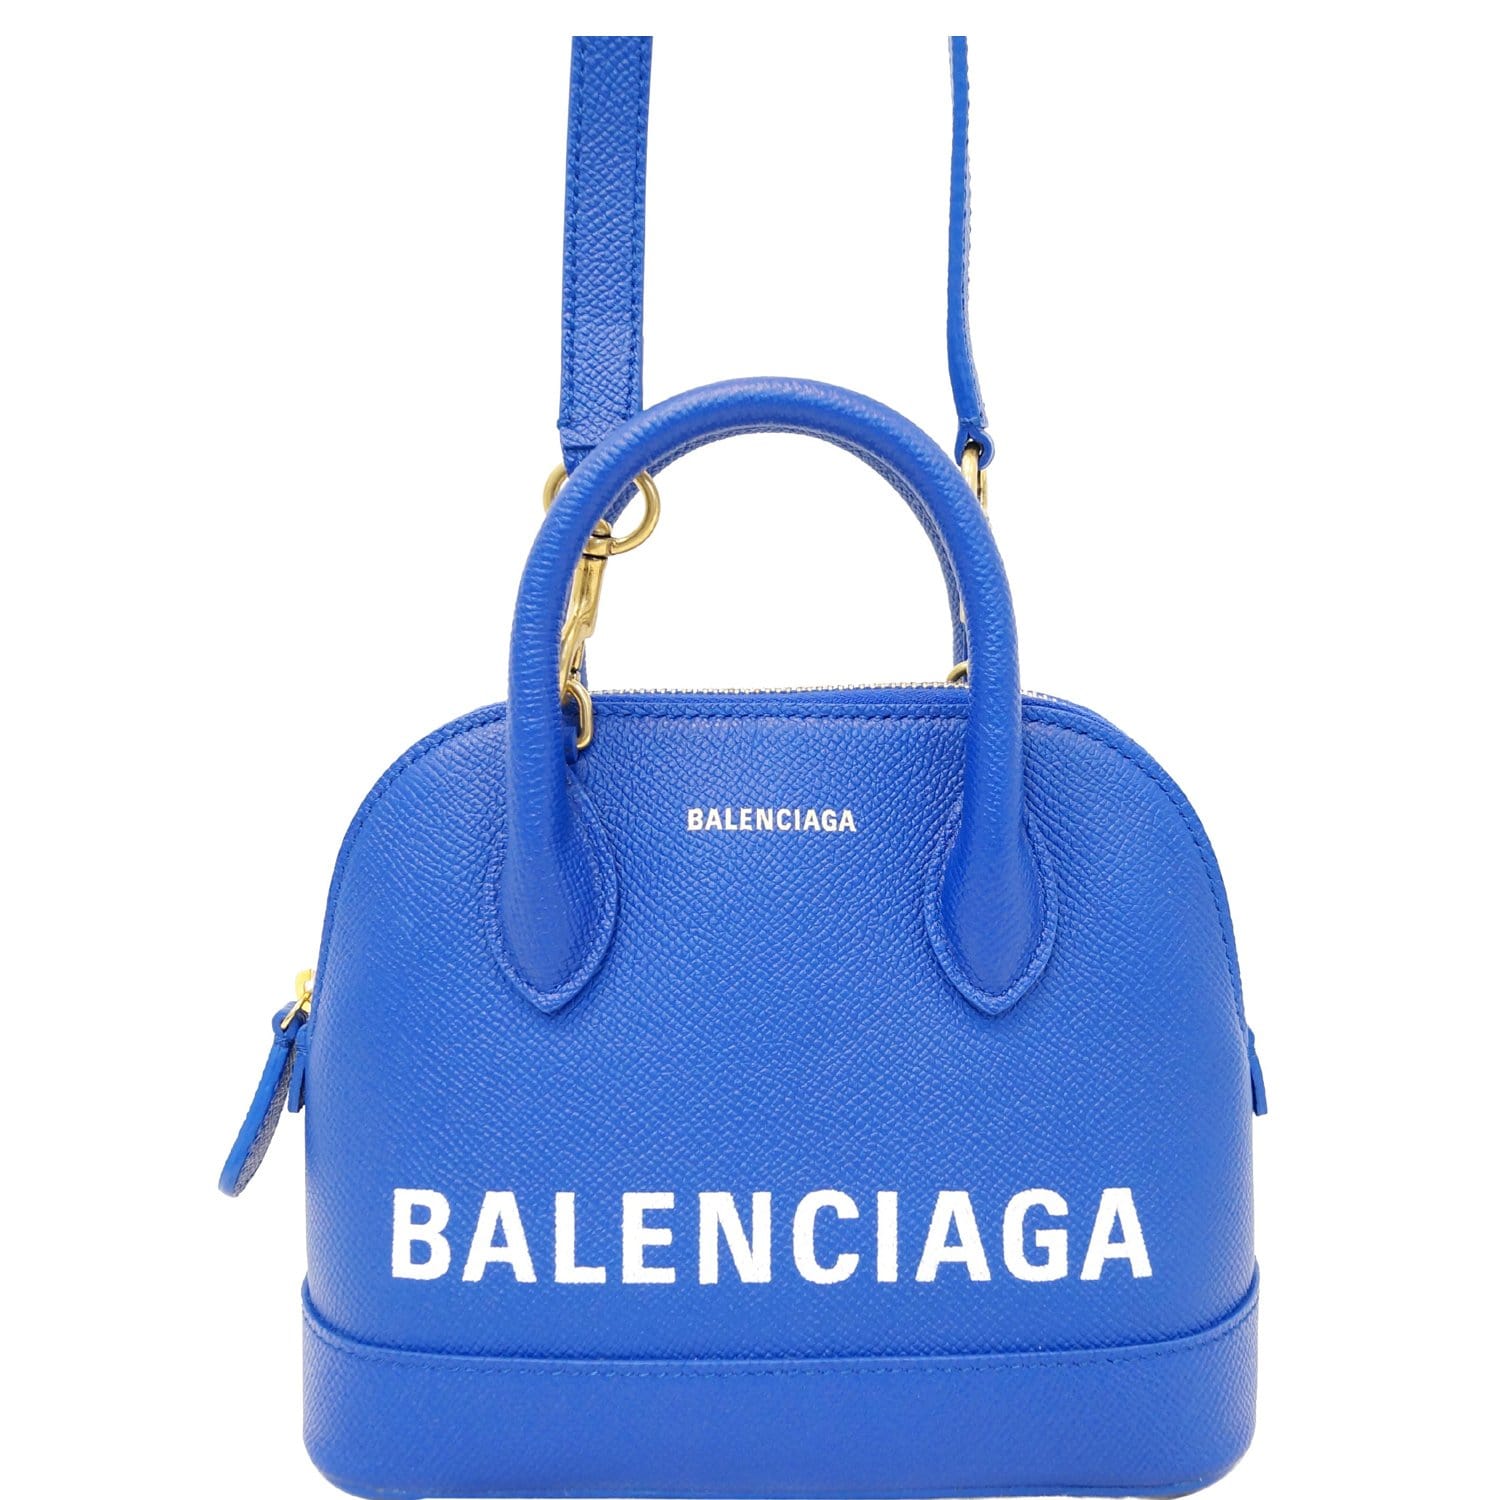 Balenciaga Crossbody Bags & Handbags for Women, Authenticity Guaranteed